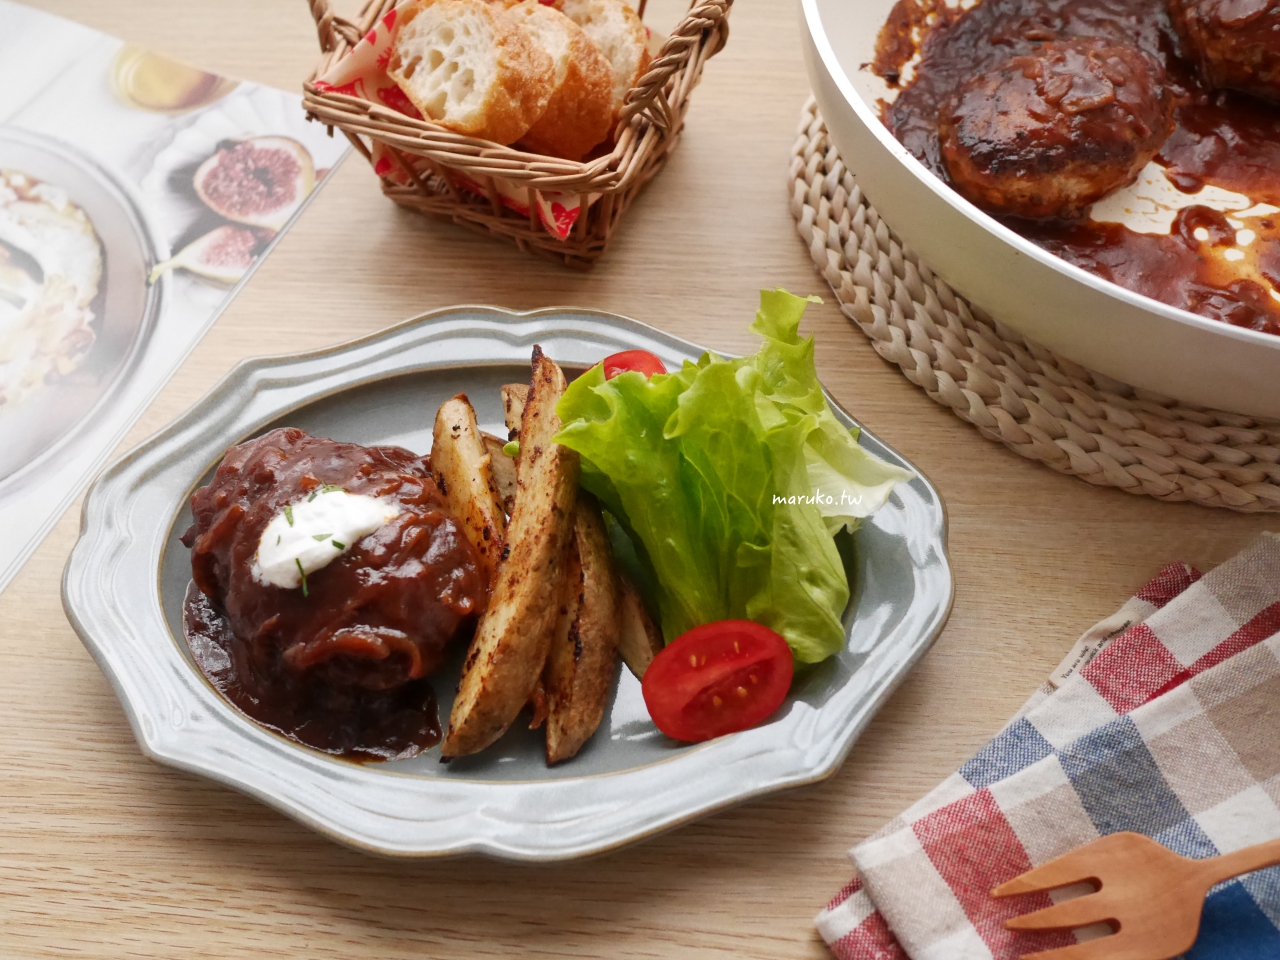 【食譜】日式紅酒漢堡排 日本洋食餐館的漢堡排醬汁做法 @Maruko與美食有個約會